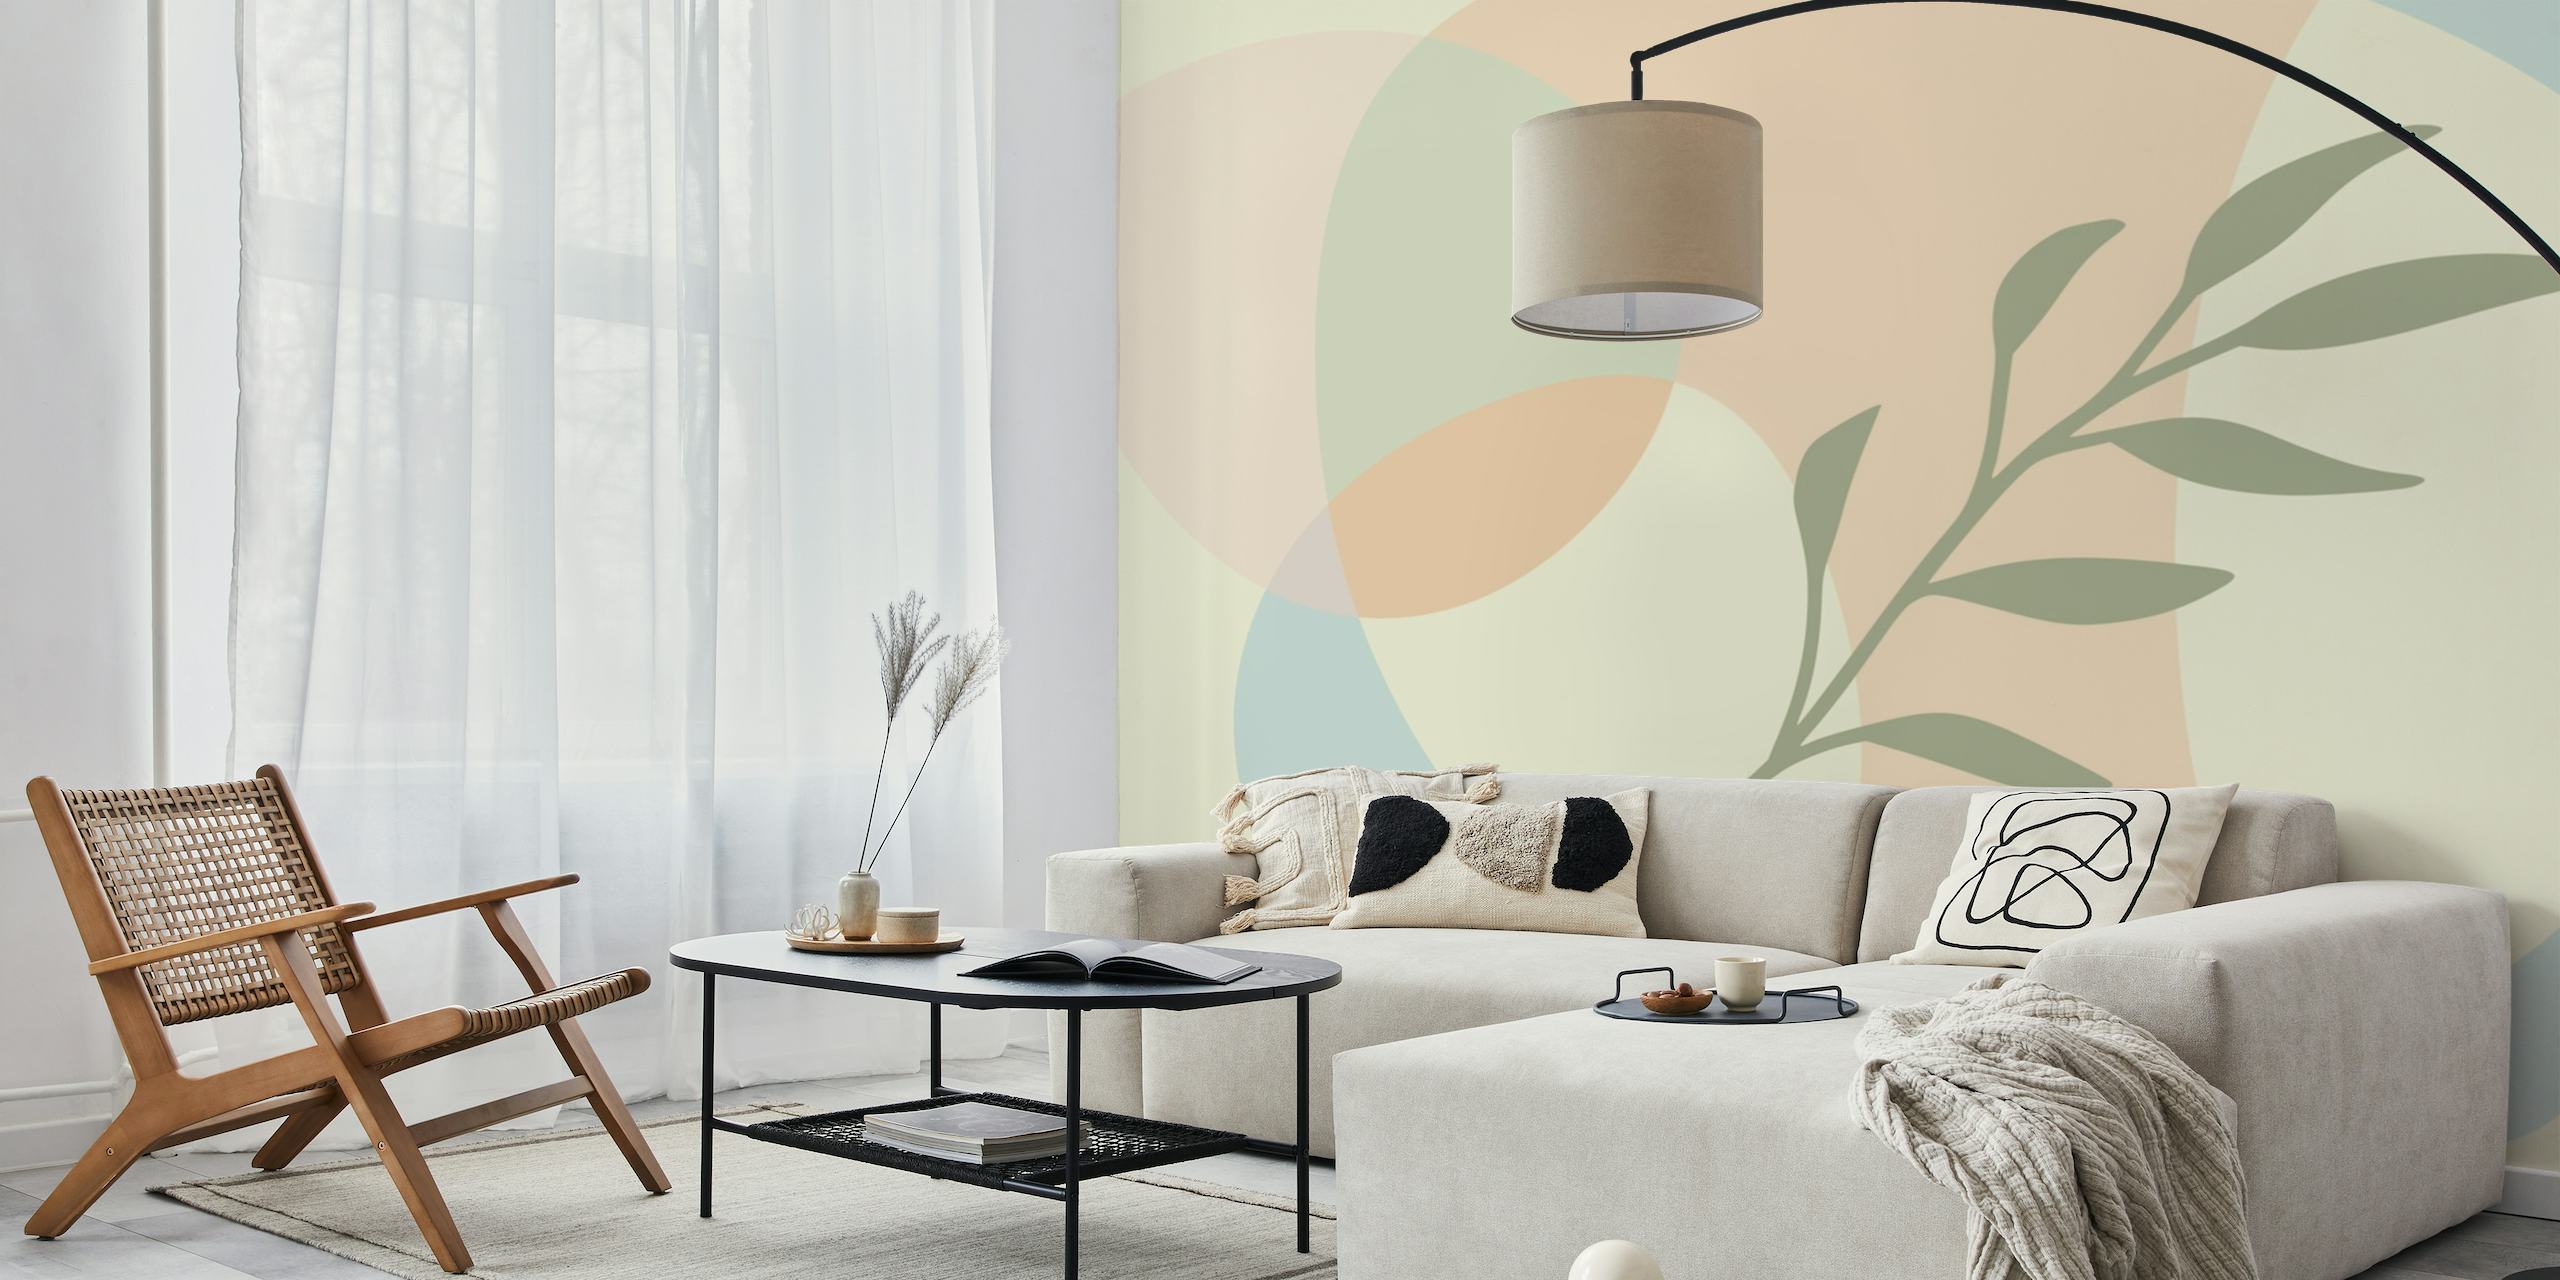 Fotomural minimalista de estilo bohemio con tonos pastel y diseño de hojas